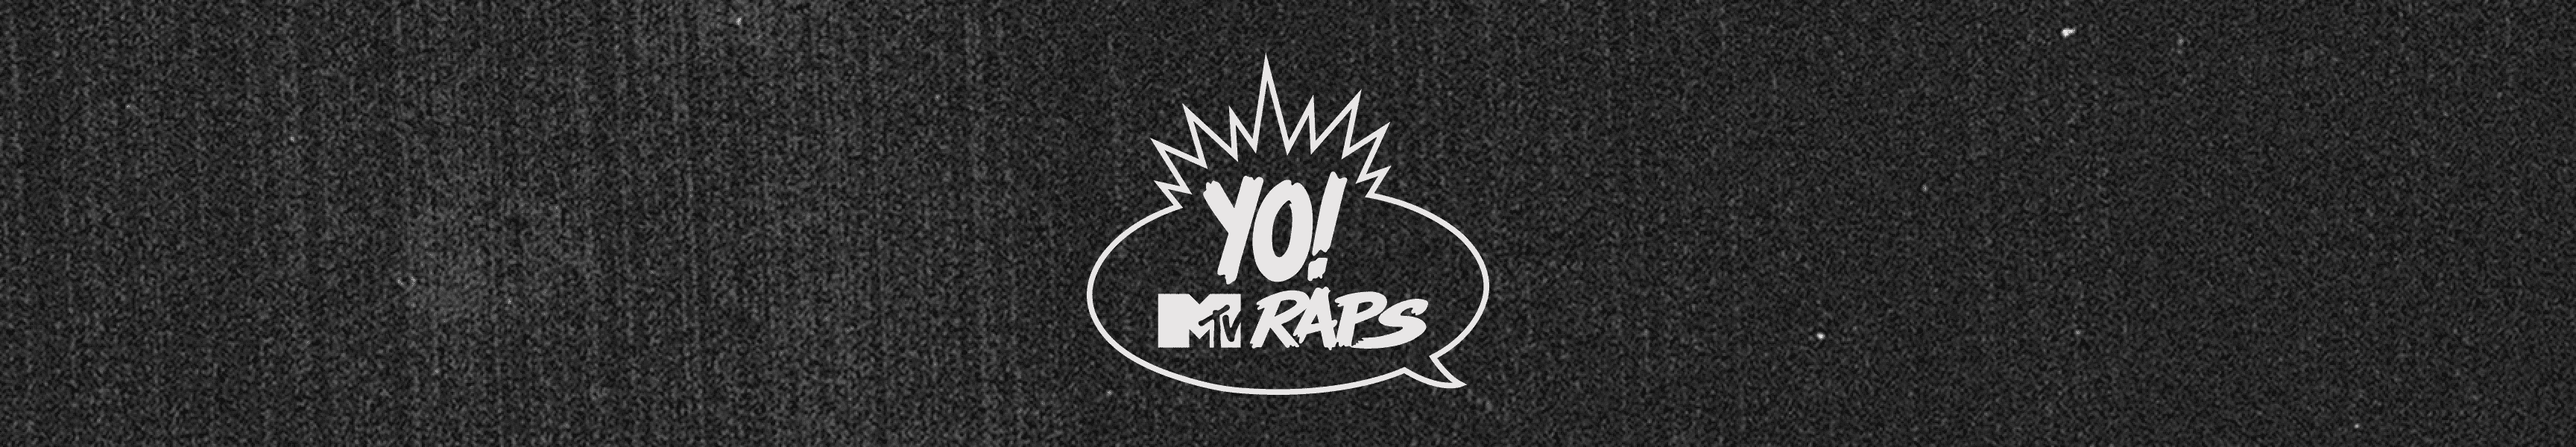 ¡YO! MTV Raps